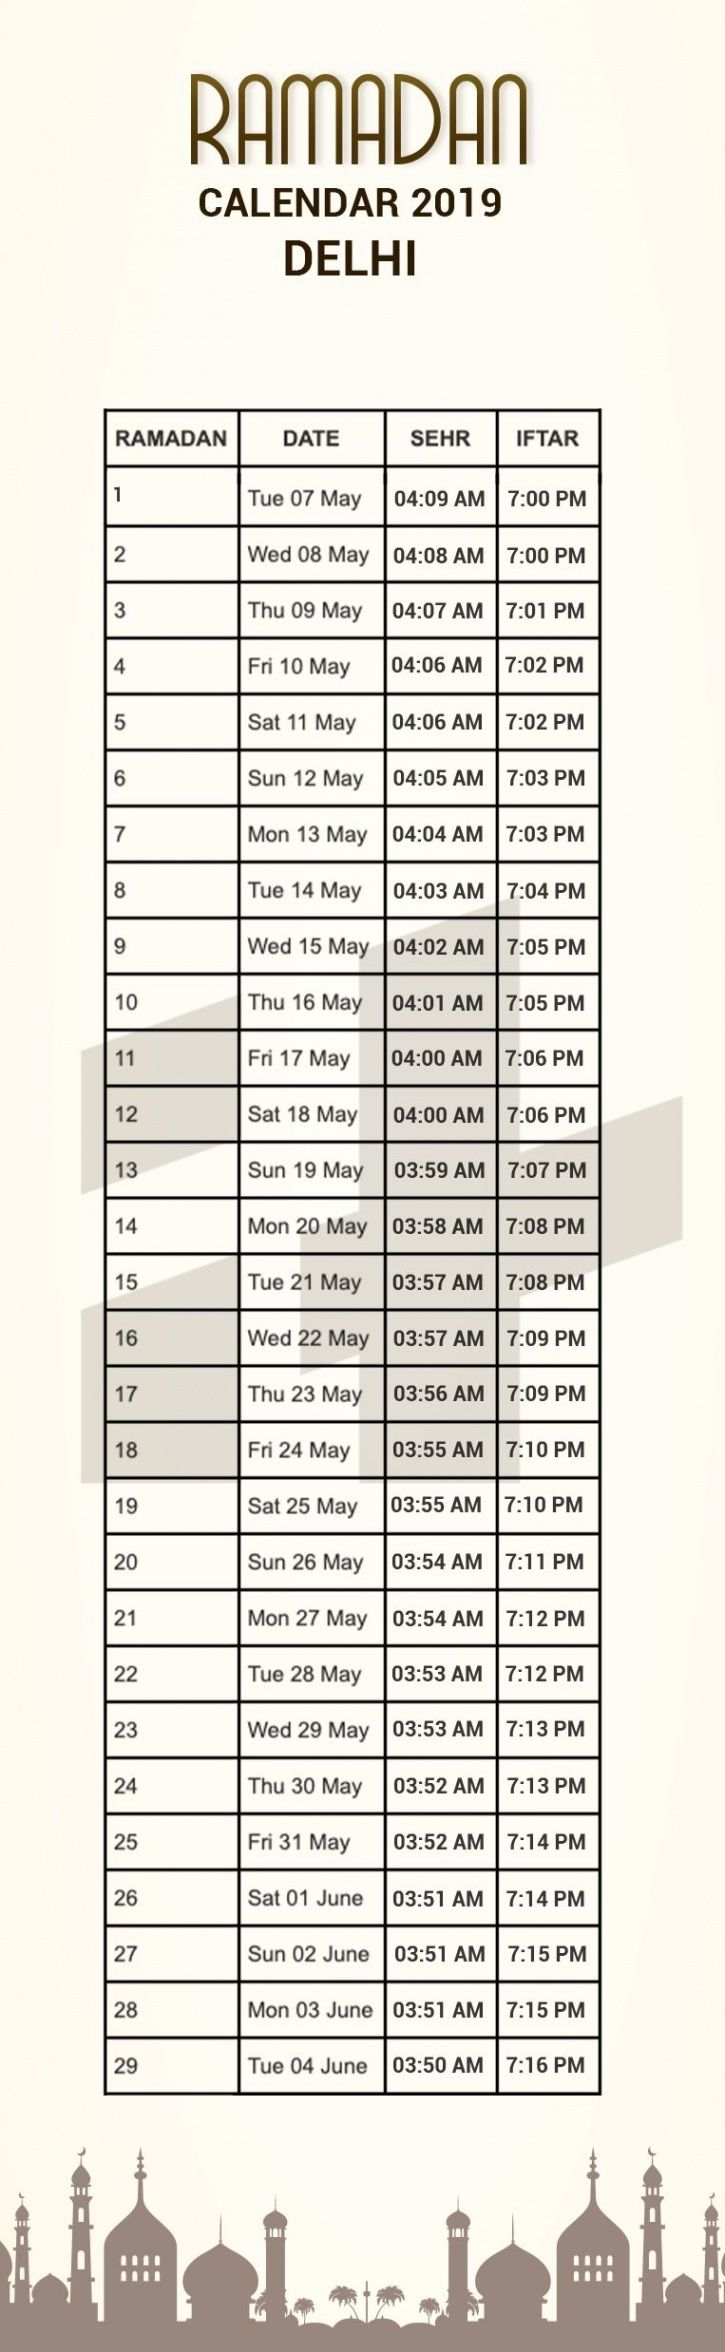 Calendar of Iftar timings in delhi